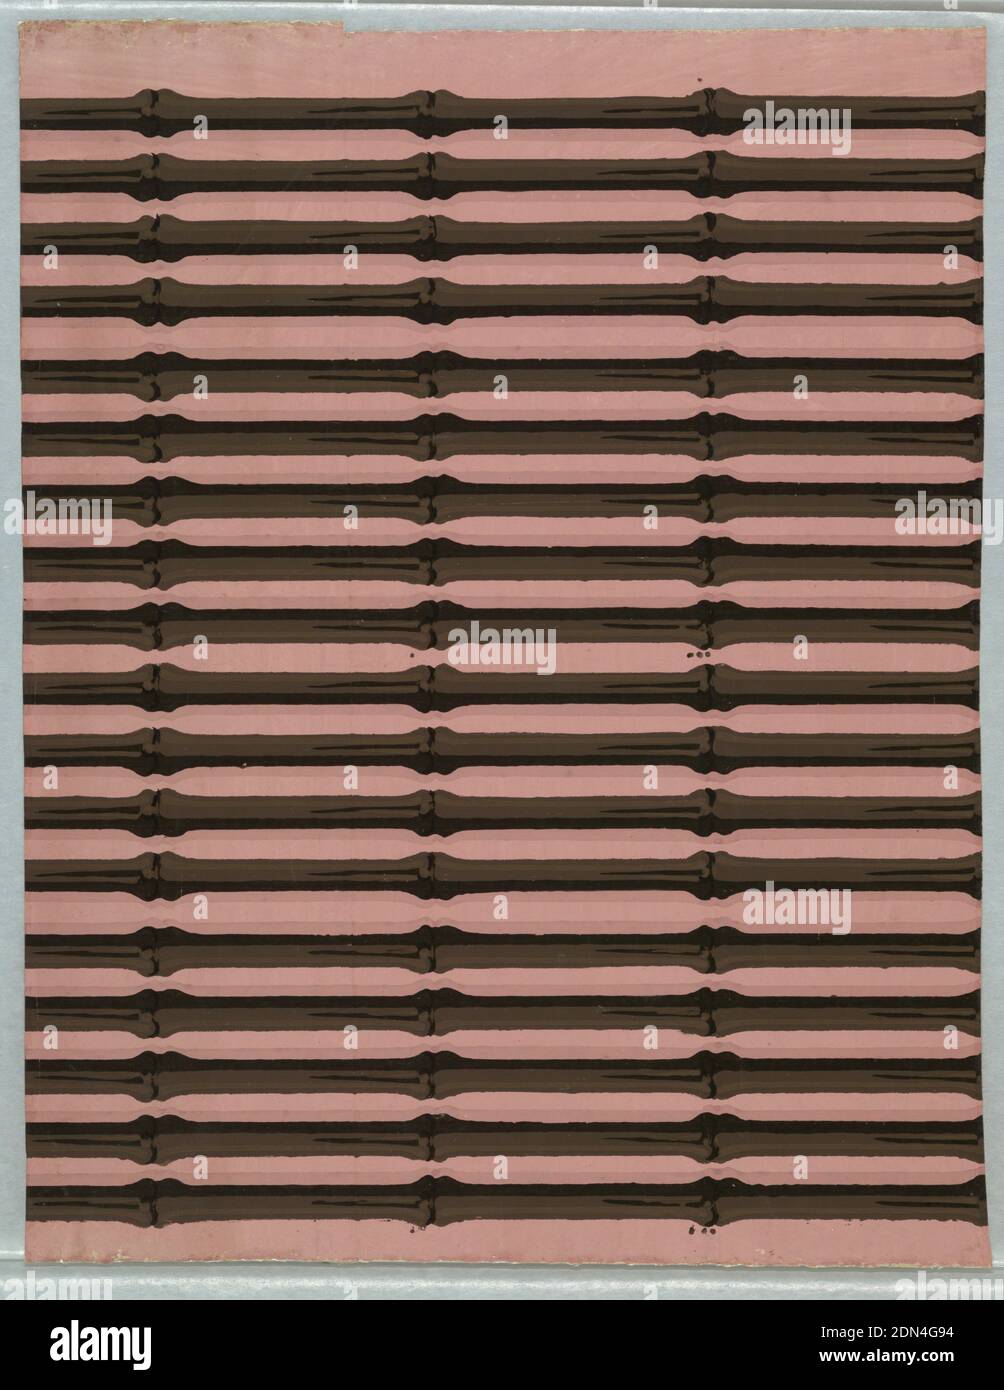 Bordüren, Blockdruck auf handgefertigtem Papier, schwarze parallele Bambusstreifen auf rosa Boden. Zwei Ränder zu einer Breite. Die Schattierung der Streifen ändert die Richtung ungefähr auf halbem Weg über jede Grenze., England, 1820–22, Wandverkleidungen, Bordüren Stockfoto